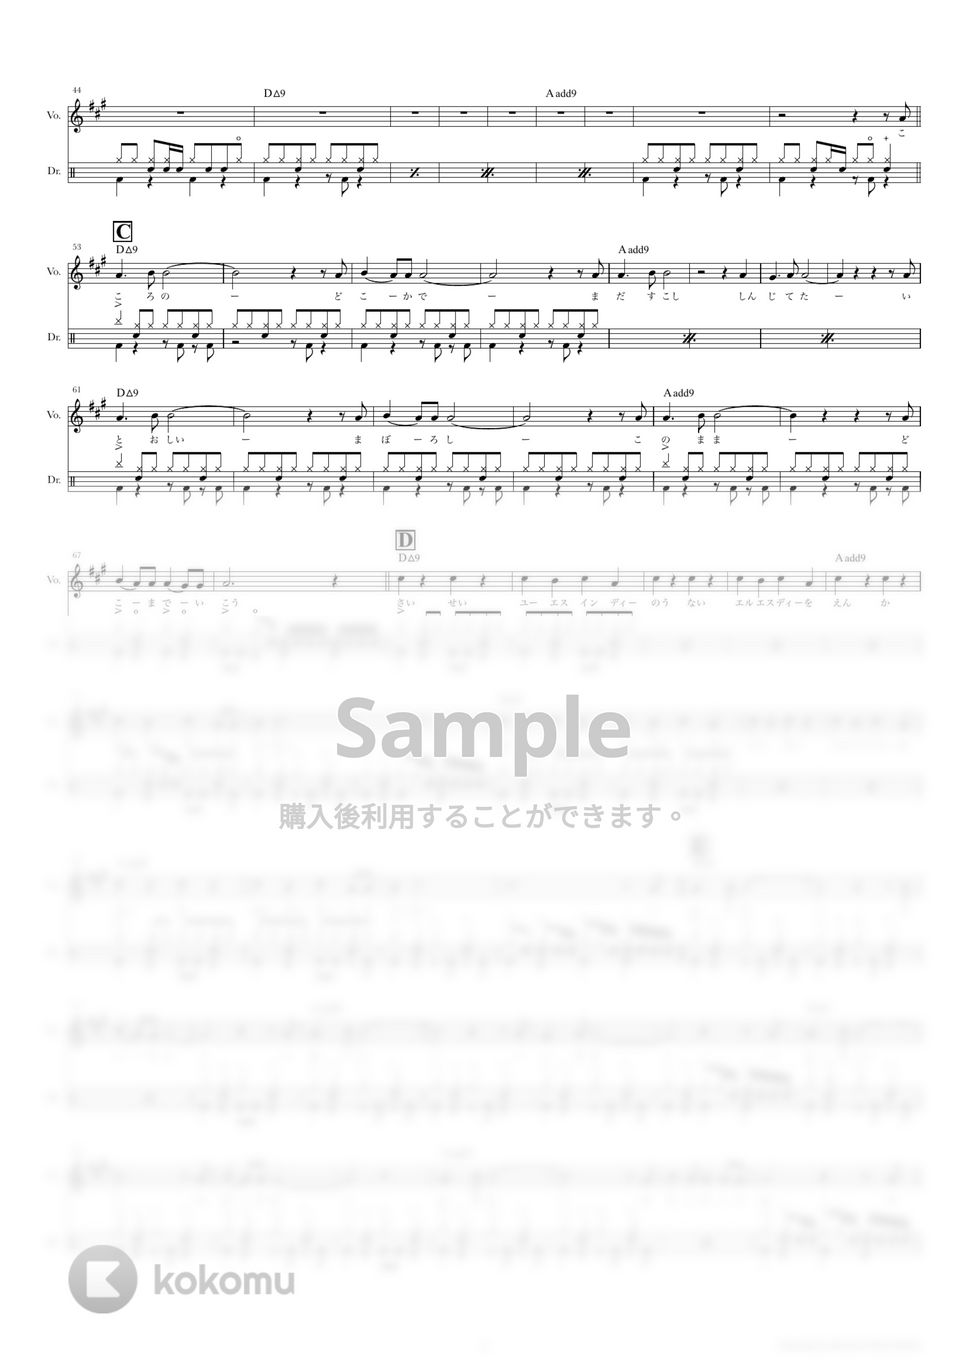 きのこ帝国 - ロンググッドバイ (ドラムスコア・歌詞・コード付き) by TRIAD GUITAR SCHOOL